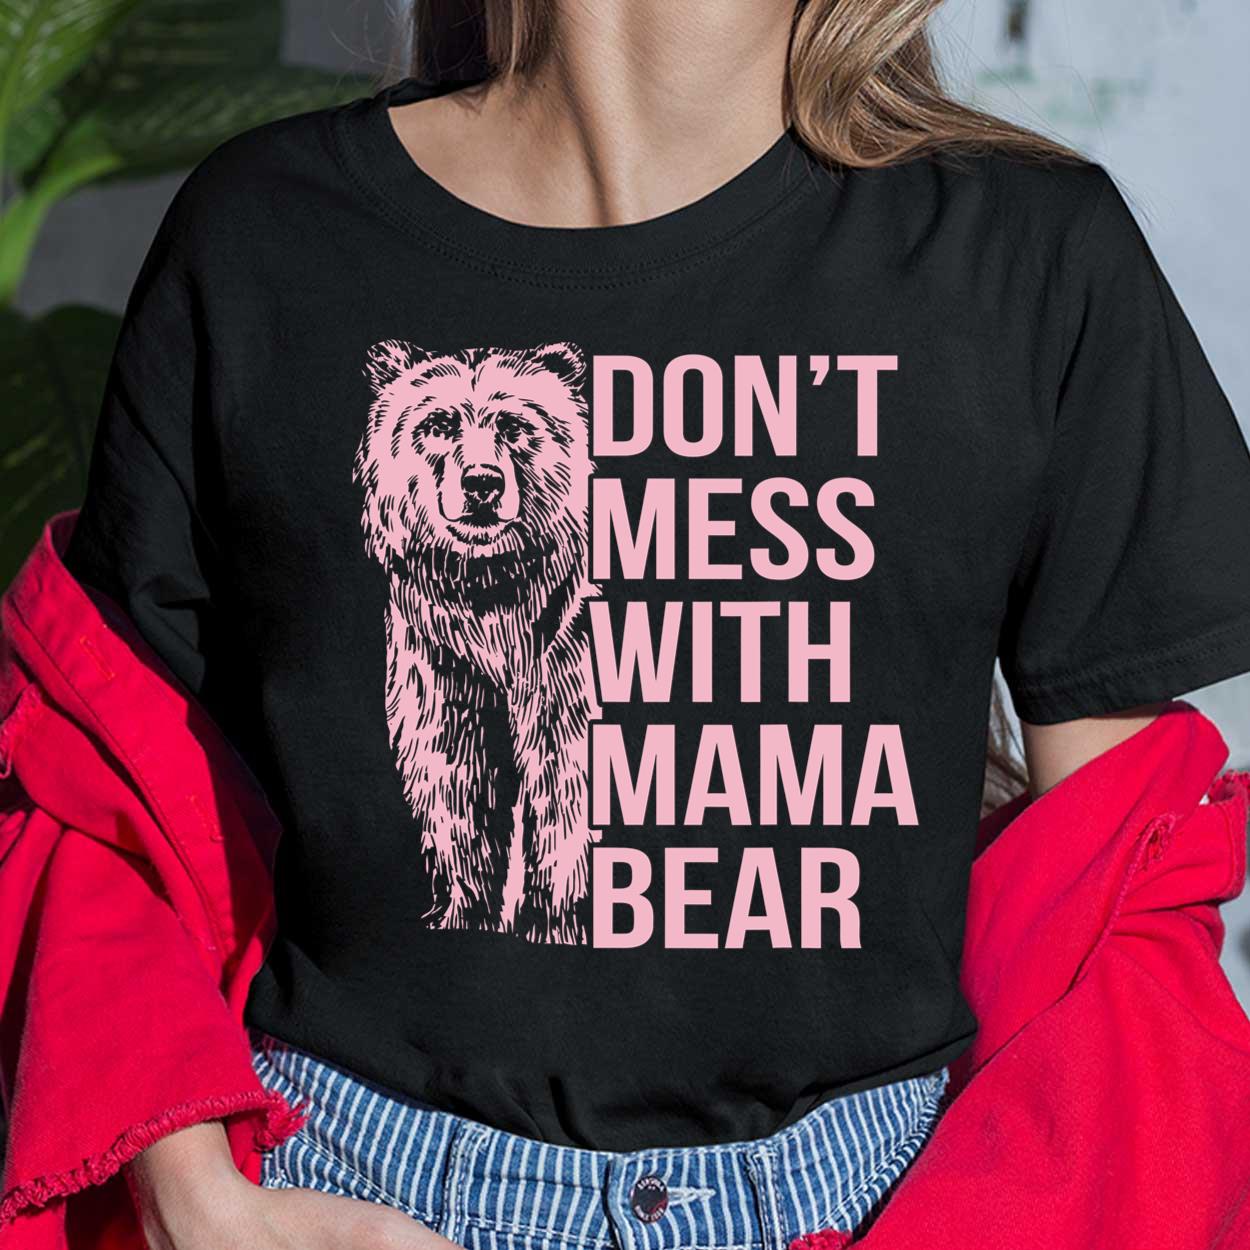 Mama Bear & Cubs Crewneck